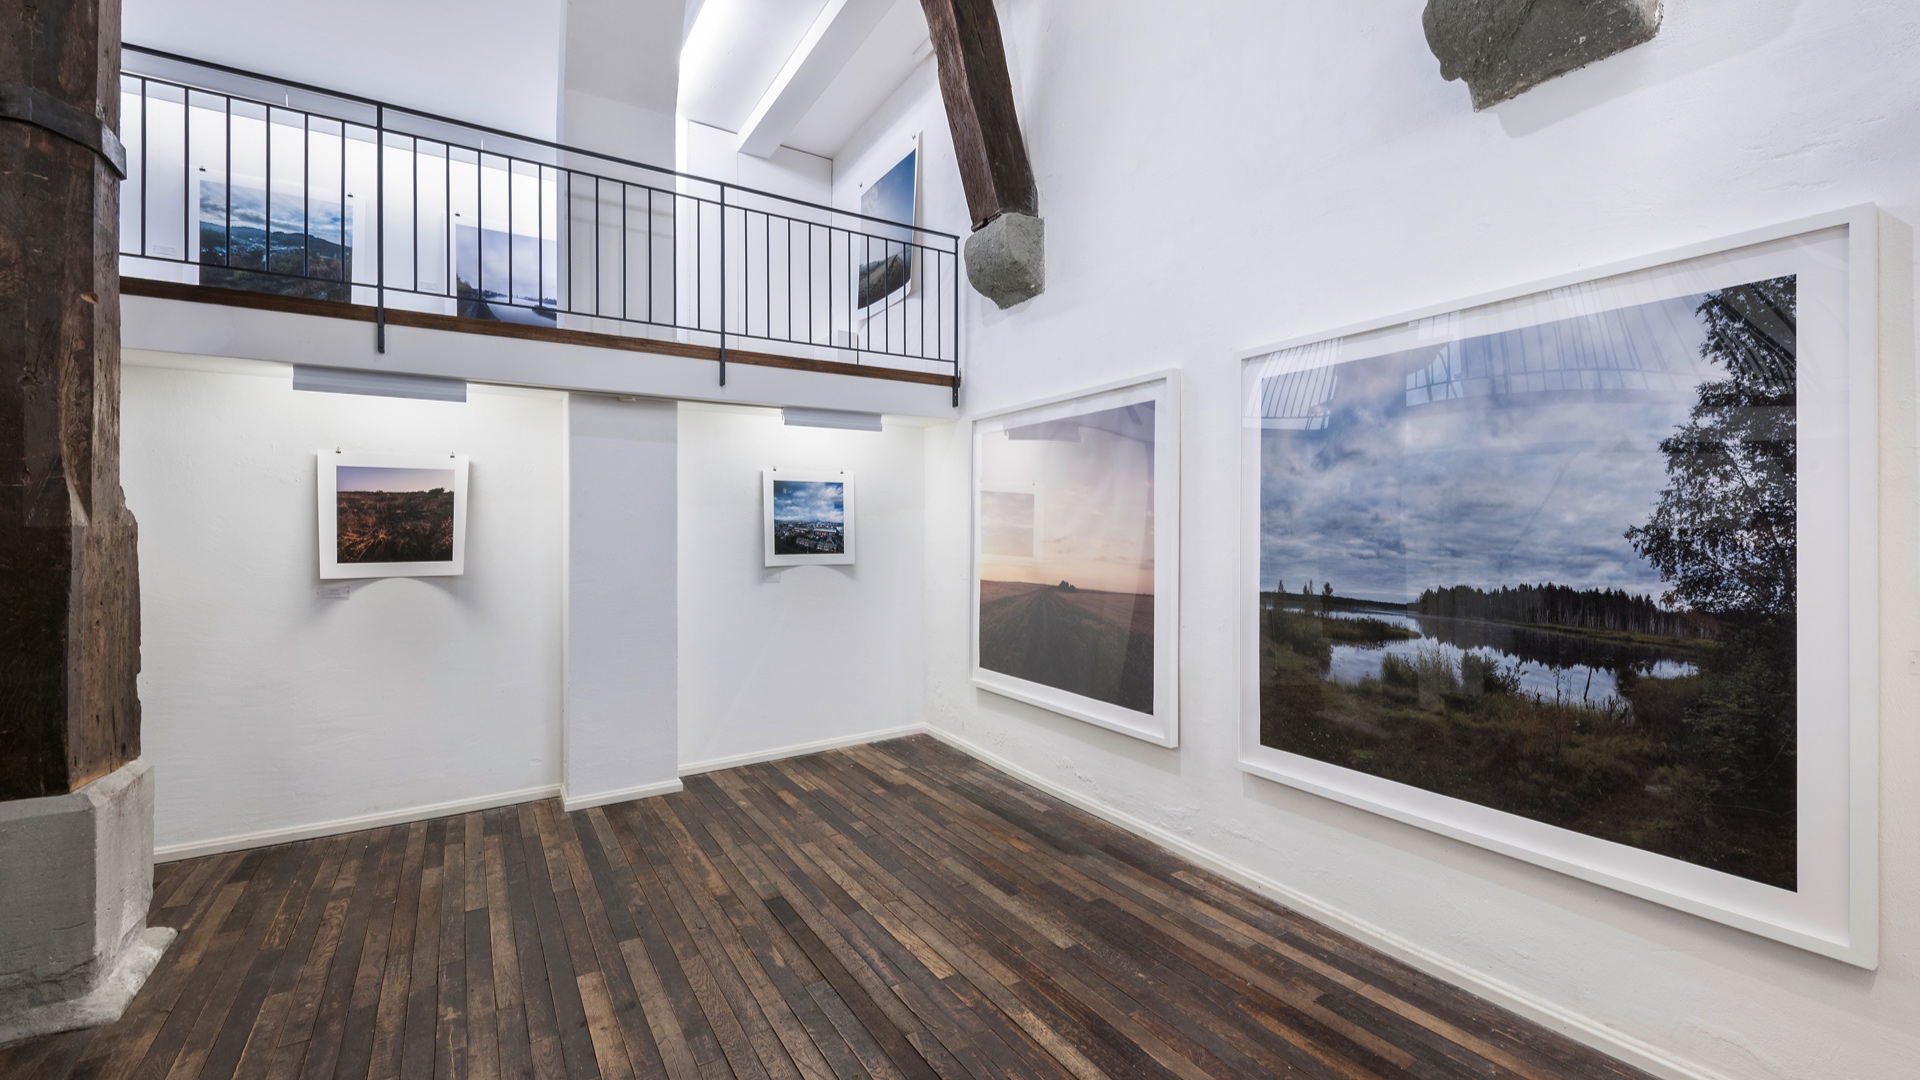 Landschaftsfotografie |  Ausstellung Galerie Walter, Zürich